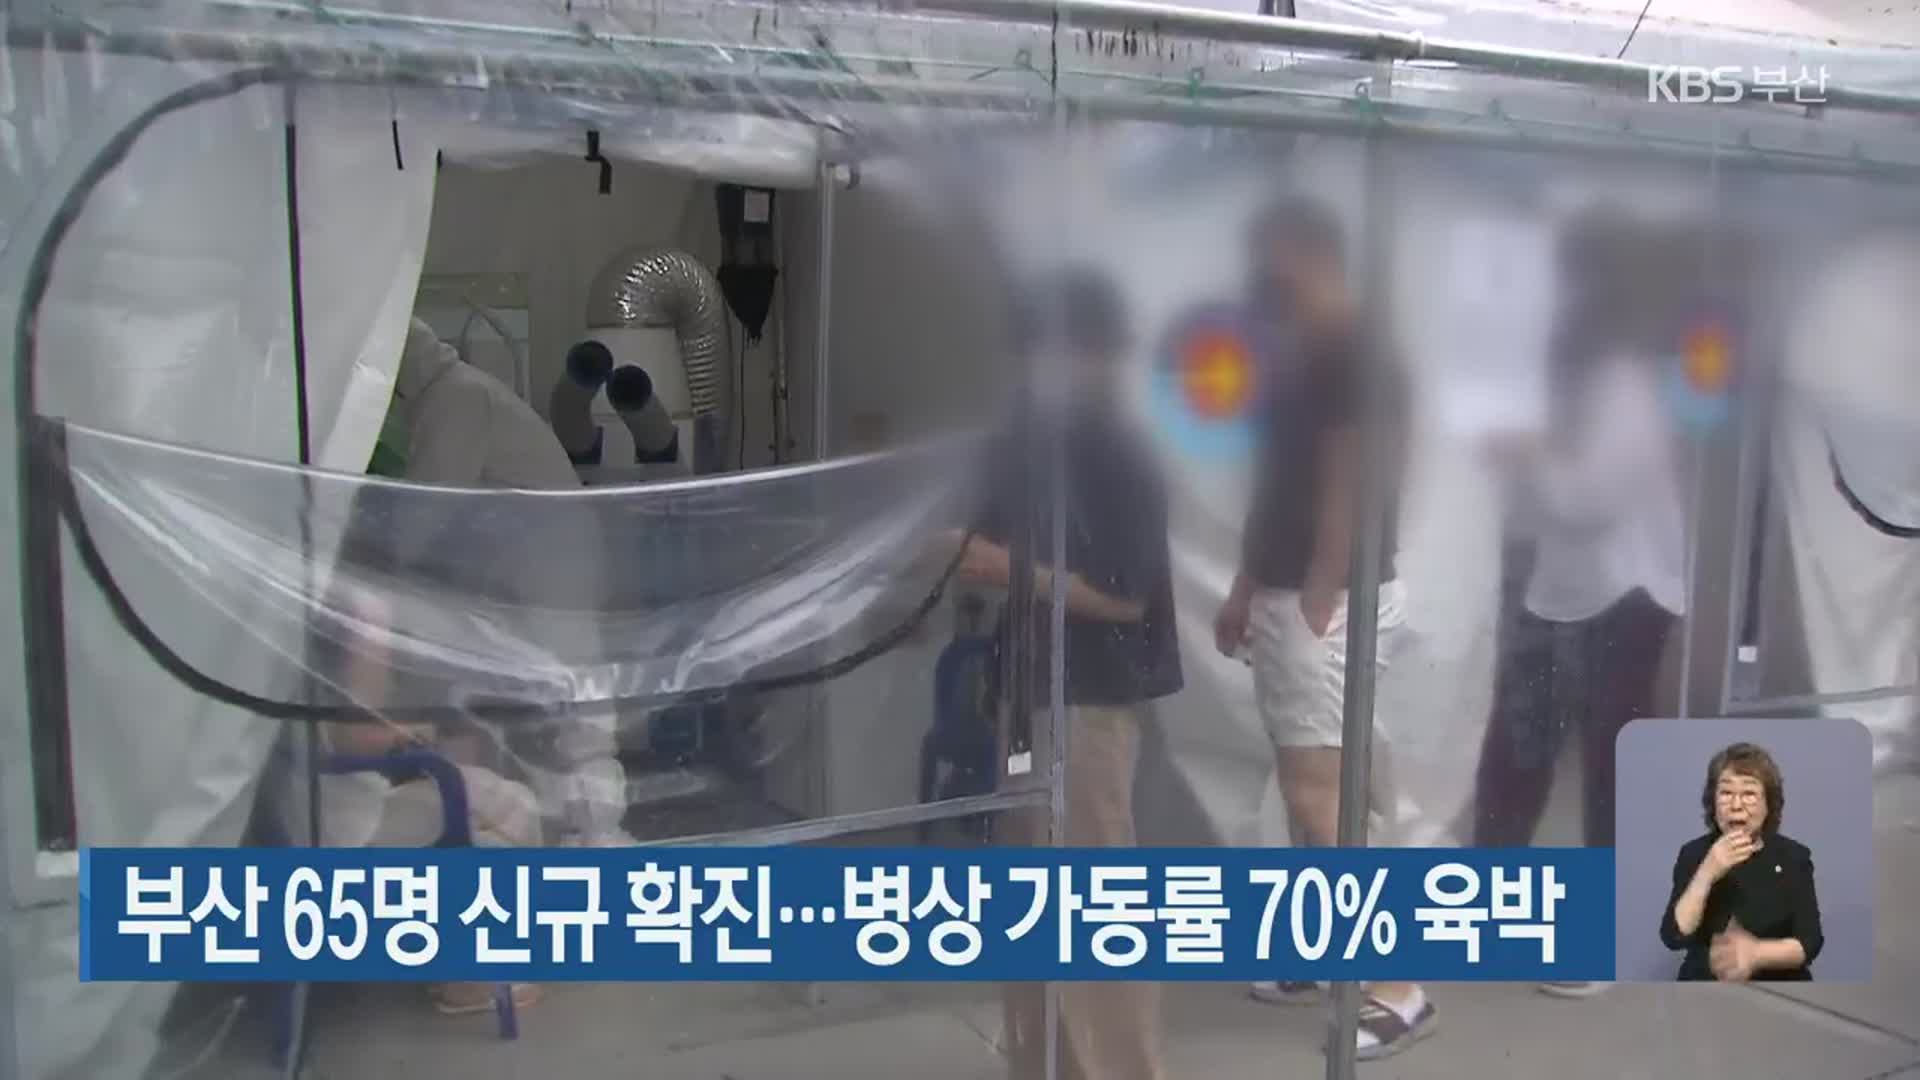 부산 65명 신규 확진…병상 가동률 70% 육박